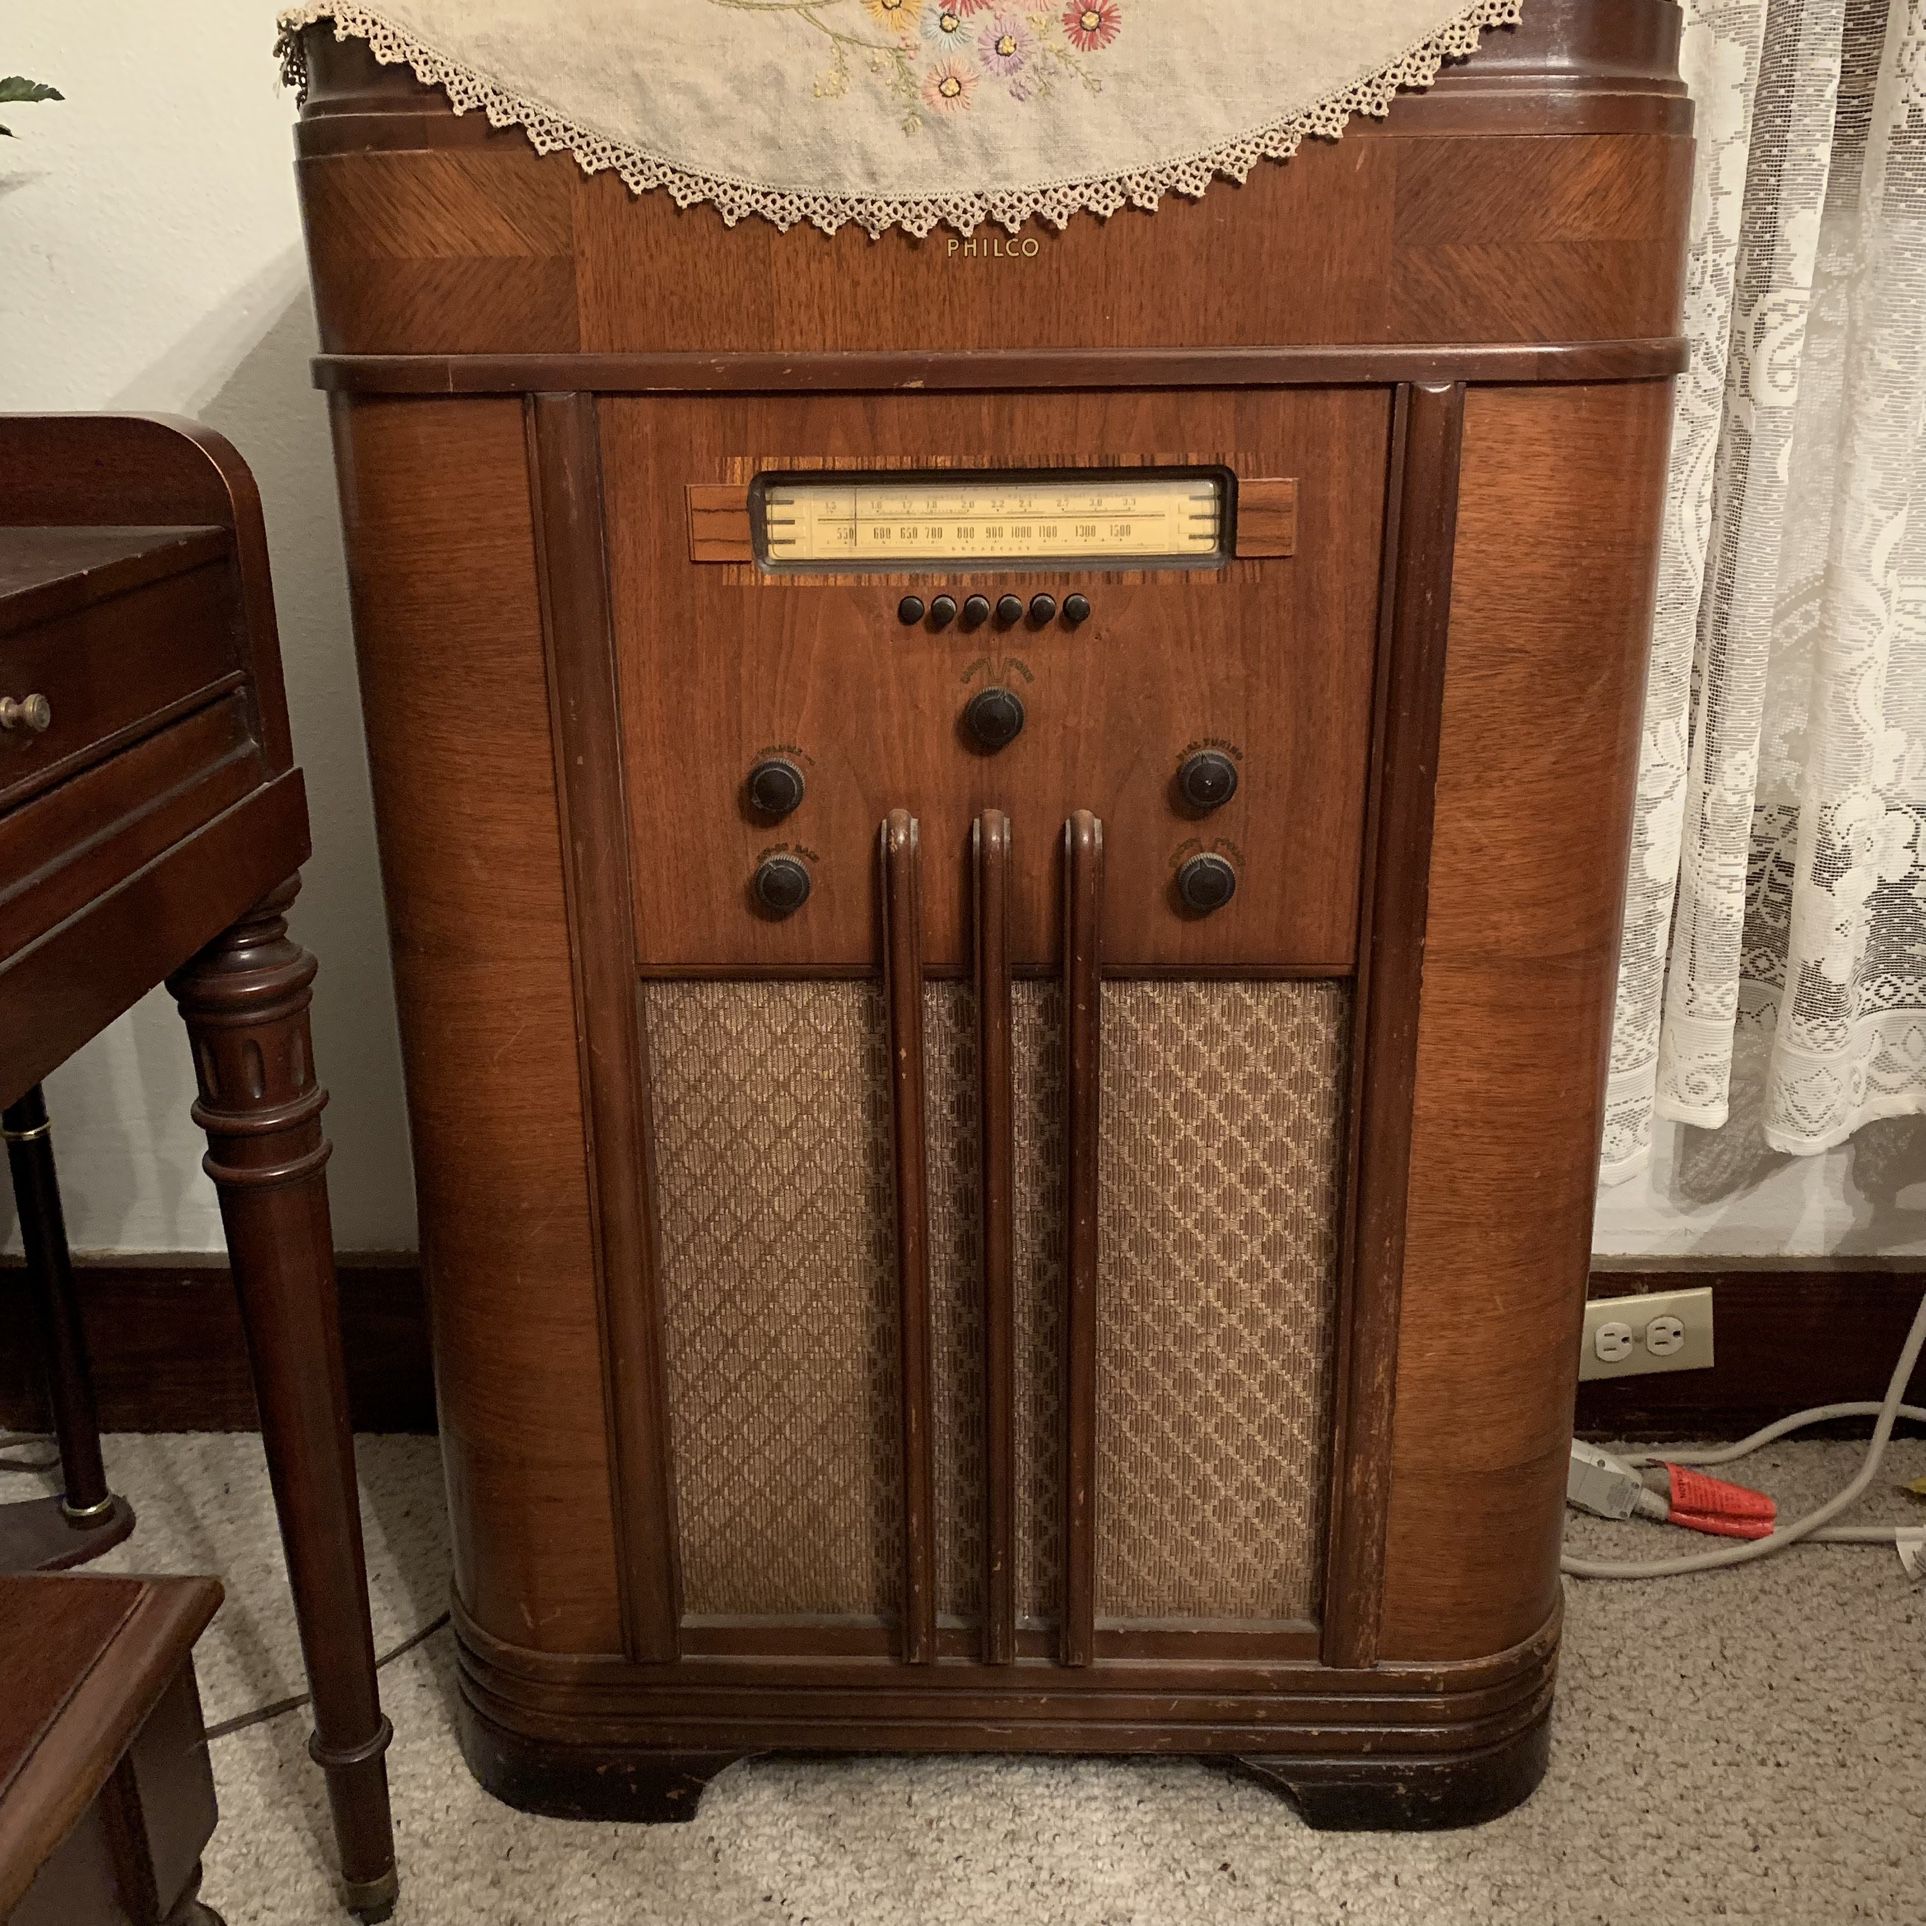 Antique Philco Jukebox Radio